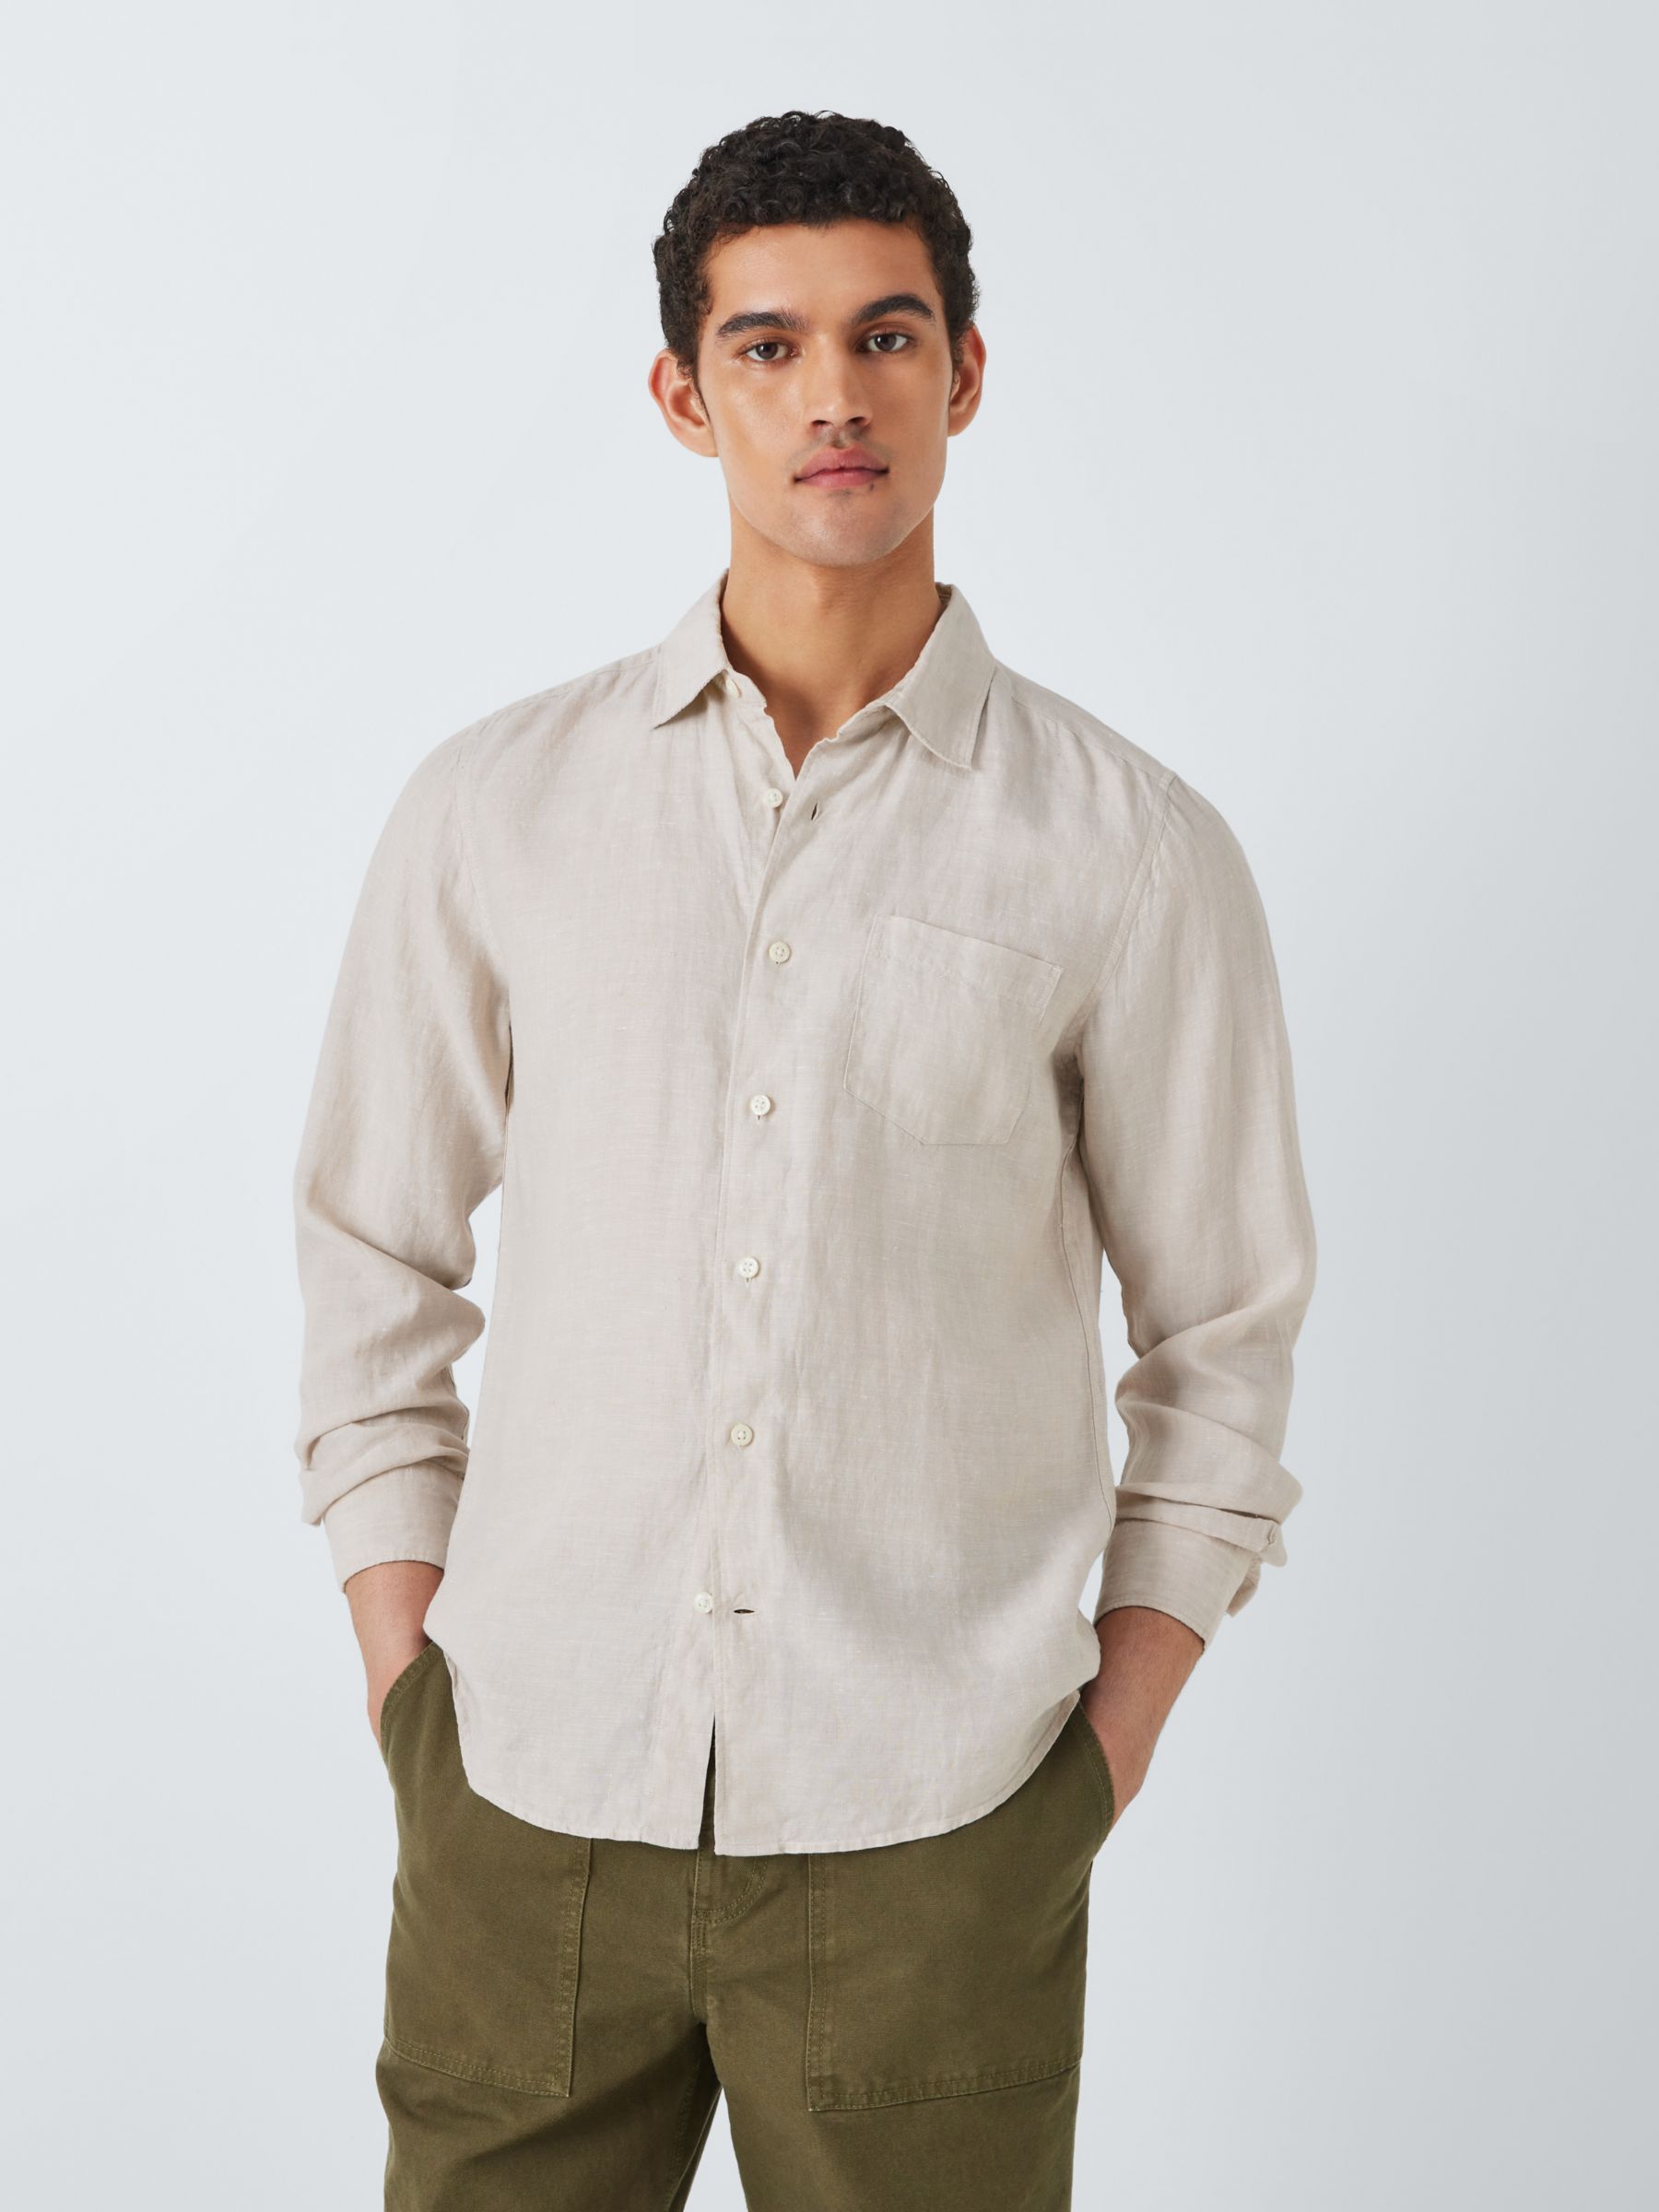 John Lewis Linen Regular Fit Shirt, Sand, S